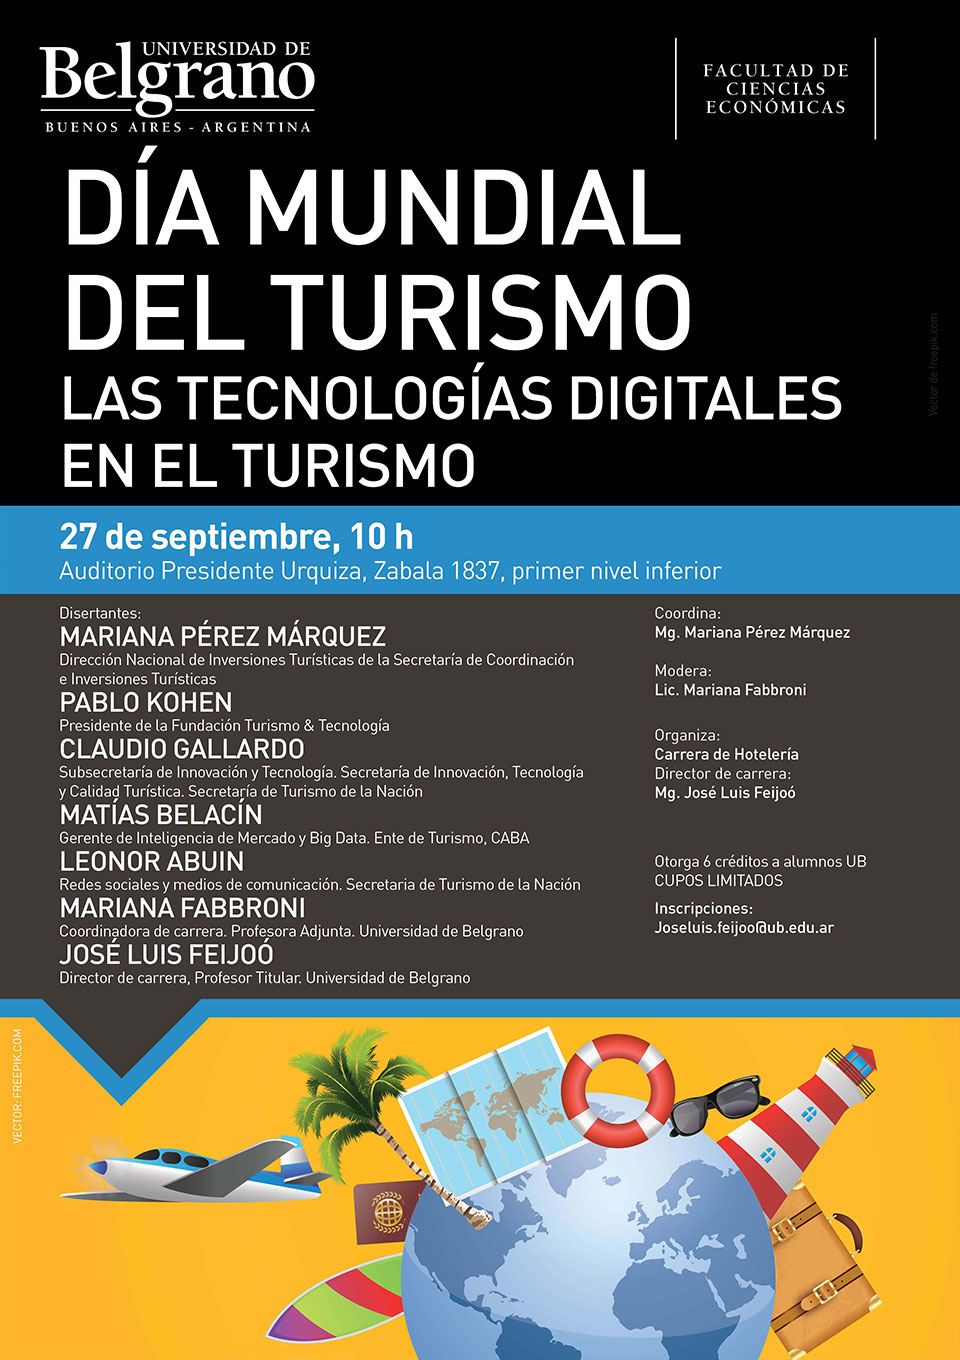 Universidad de Belgrano | Las Tecnologías Digitales en el Turismo